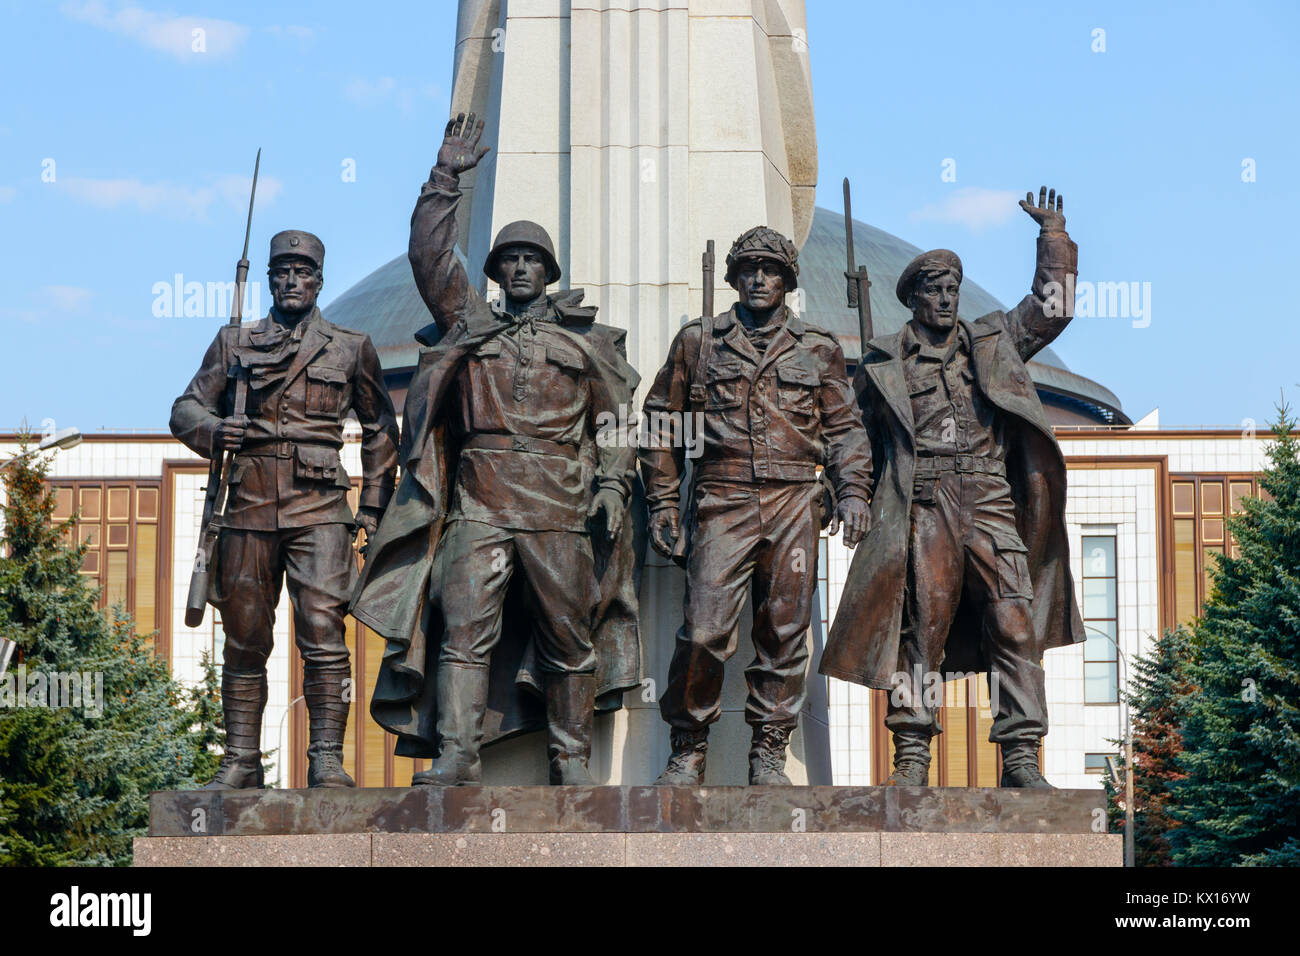 Un monumento agli Alleati una statua in bronzo presso il Parco della Vittoria raffiguranti quattro WO2 soldati delle nazioni alleate. Mosca, Russia. Foto Stock